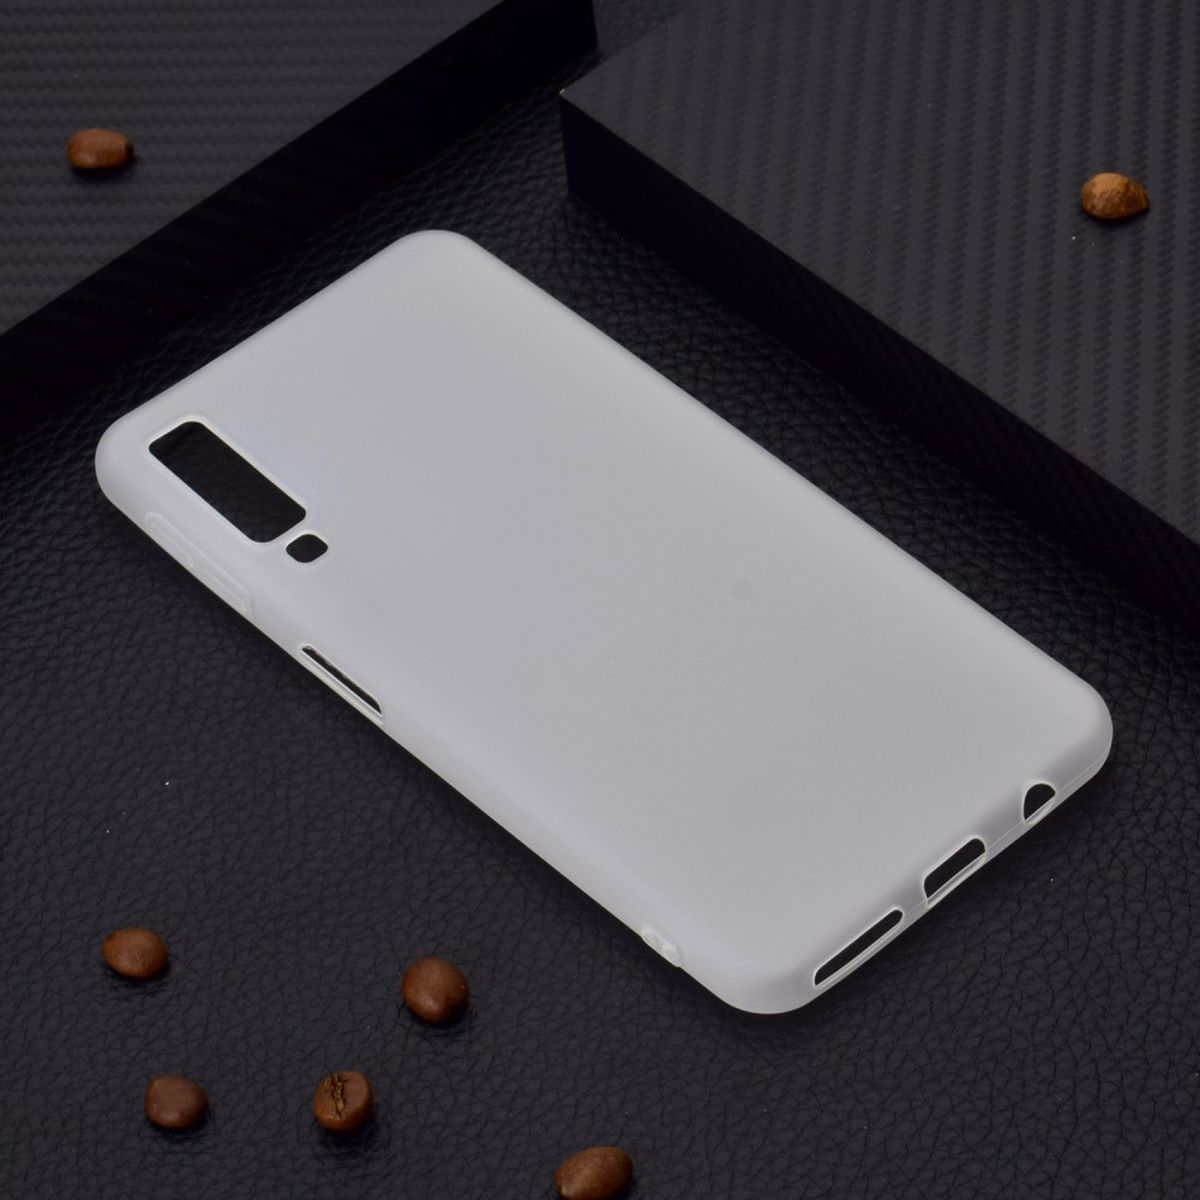 COVERKINGZ Handycase aus Samsung, Weiß A7 2018, Backcover, Silikon, Galaxy